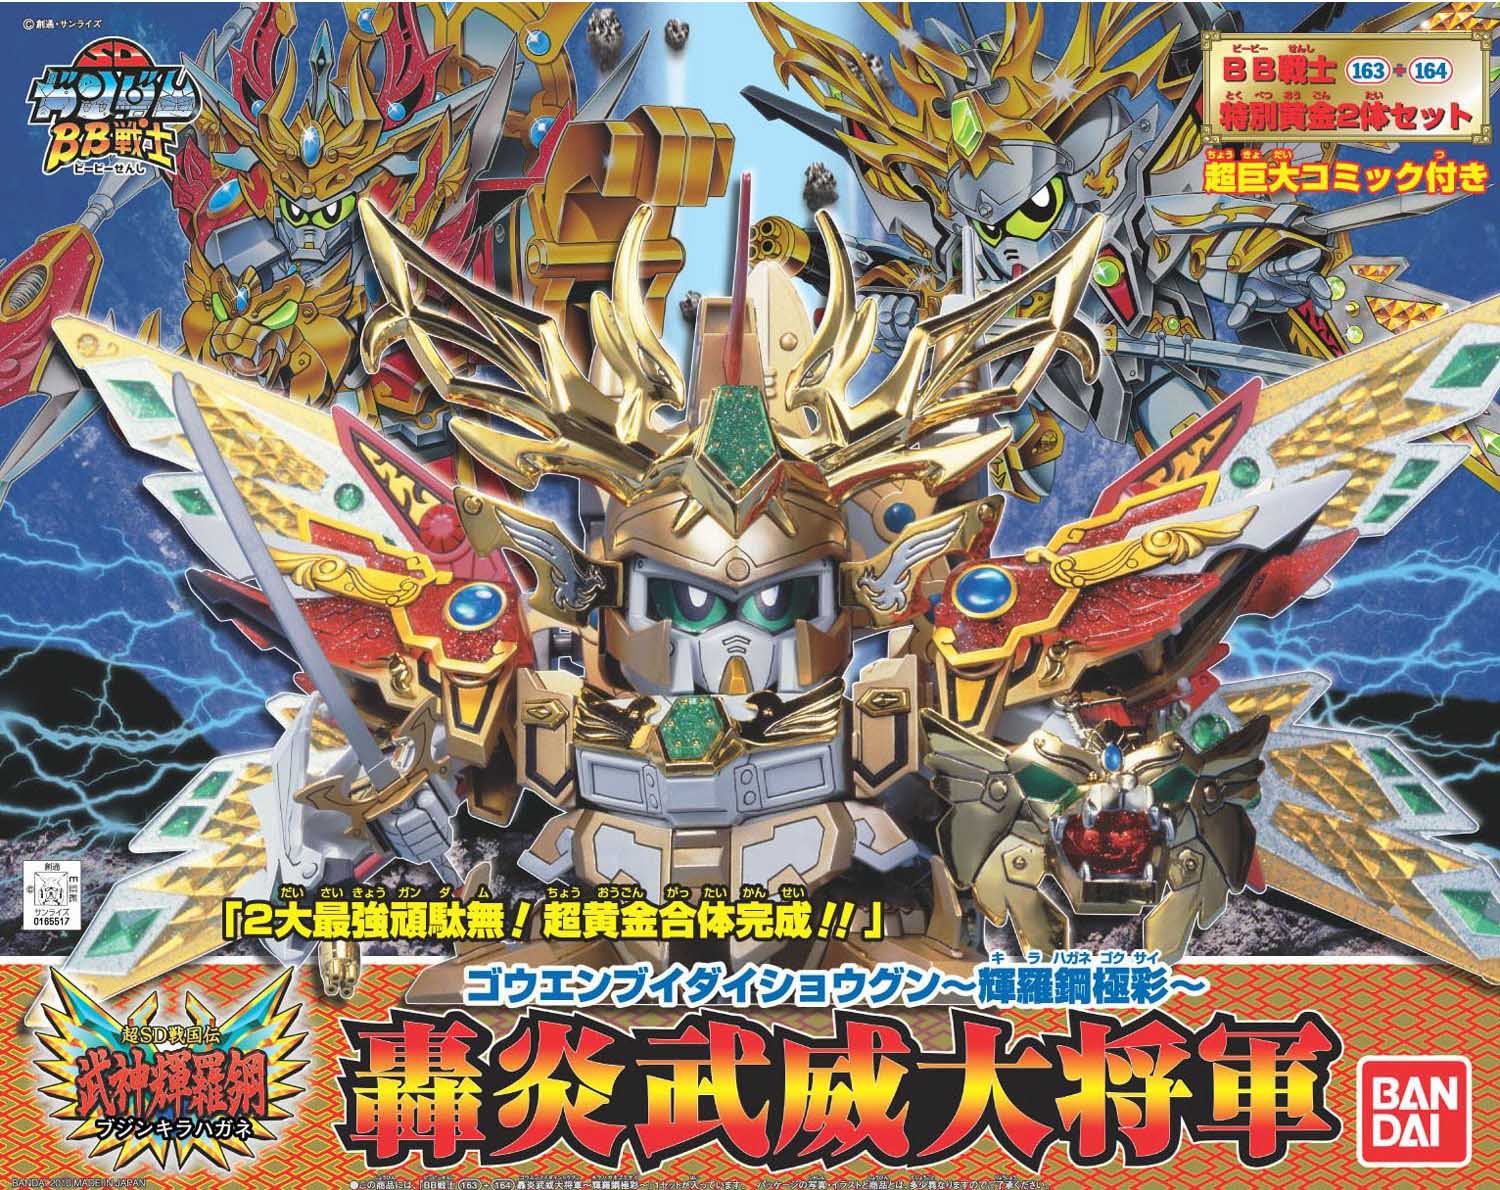 Gundam SD BB #163+164 Gouenbui Daishogun Kirahagane Gokusai Model Kit